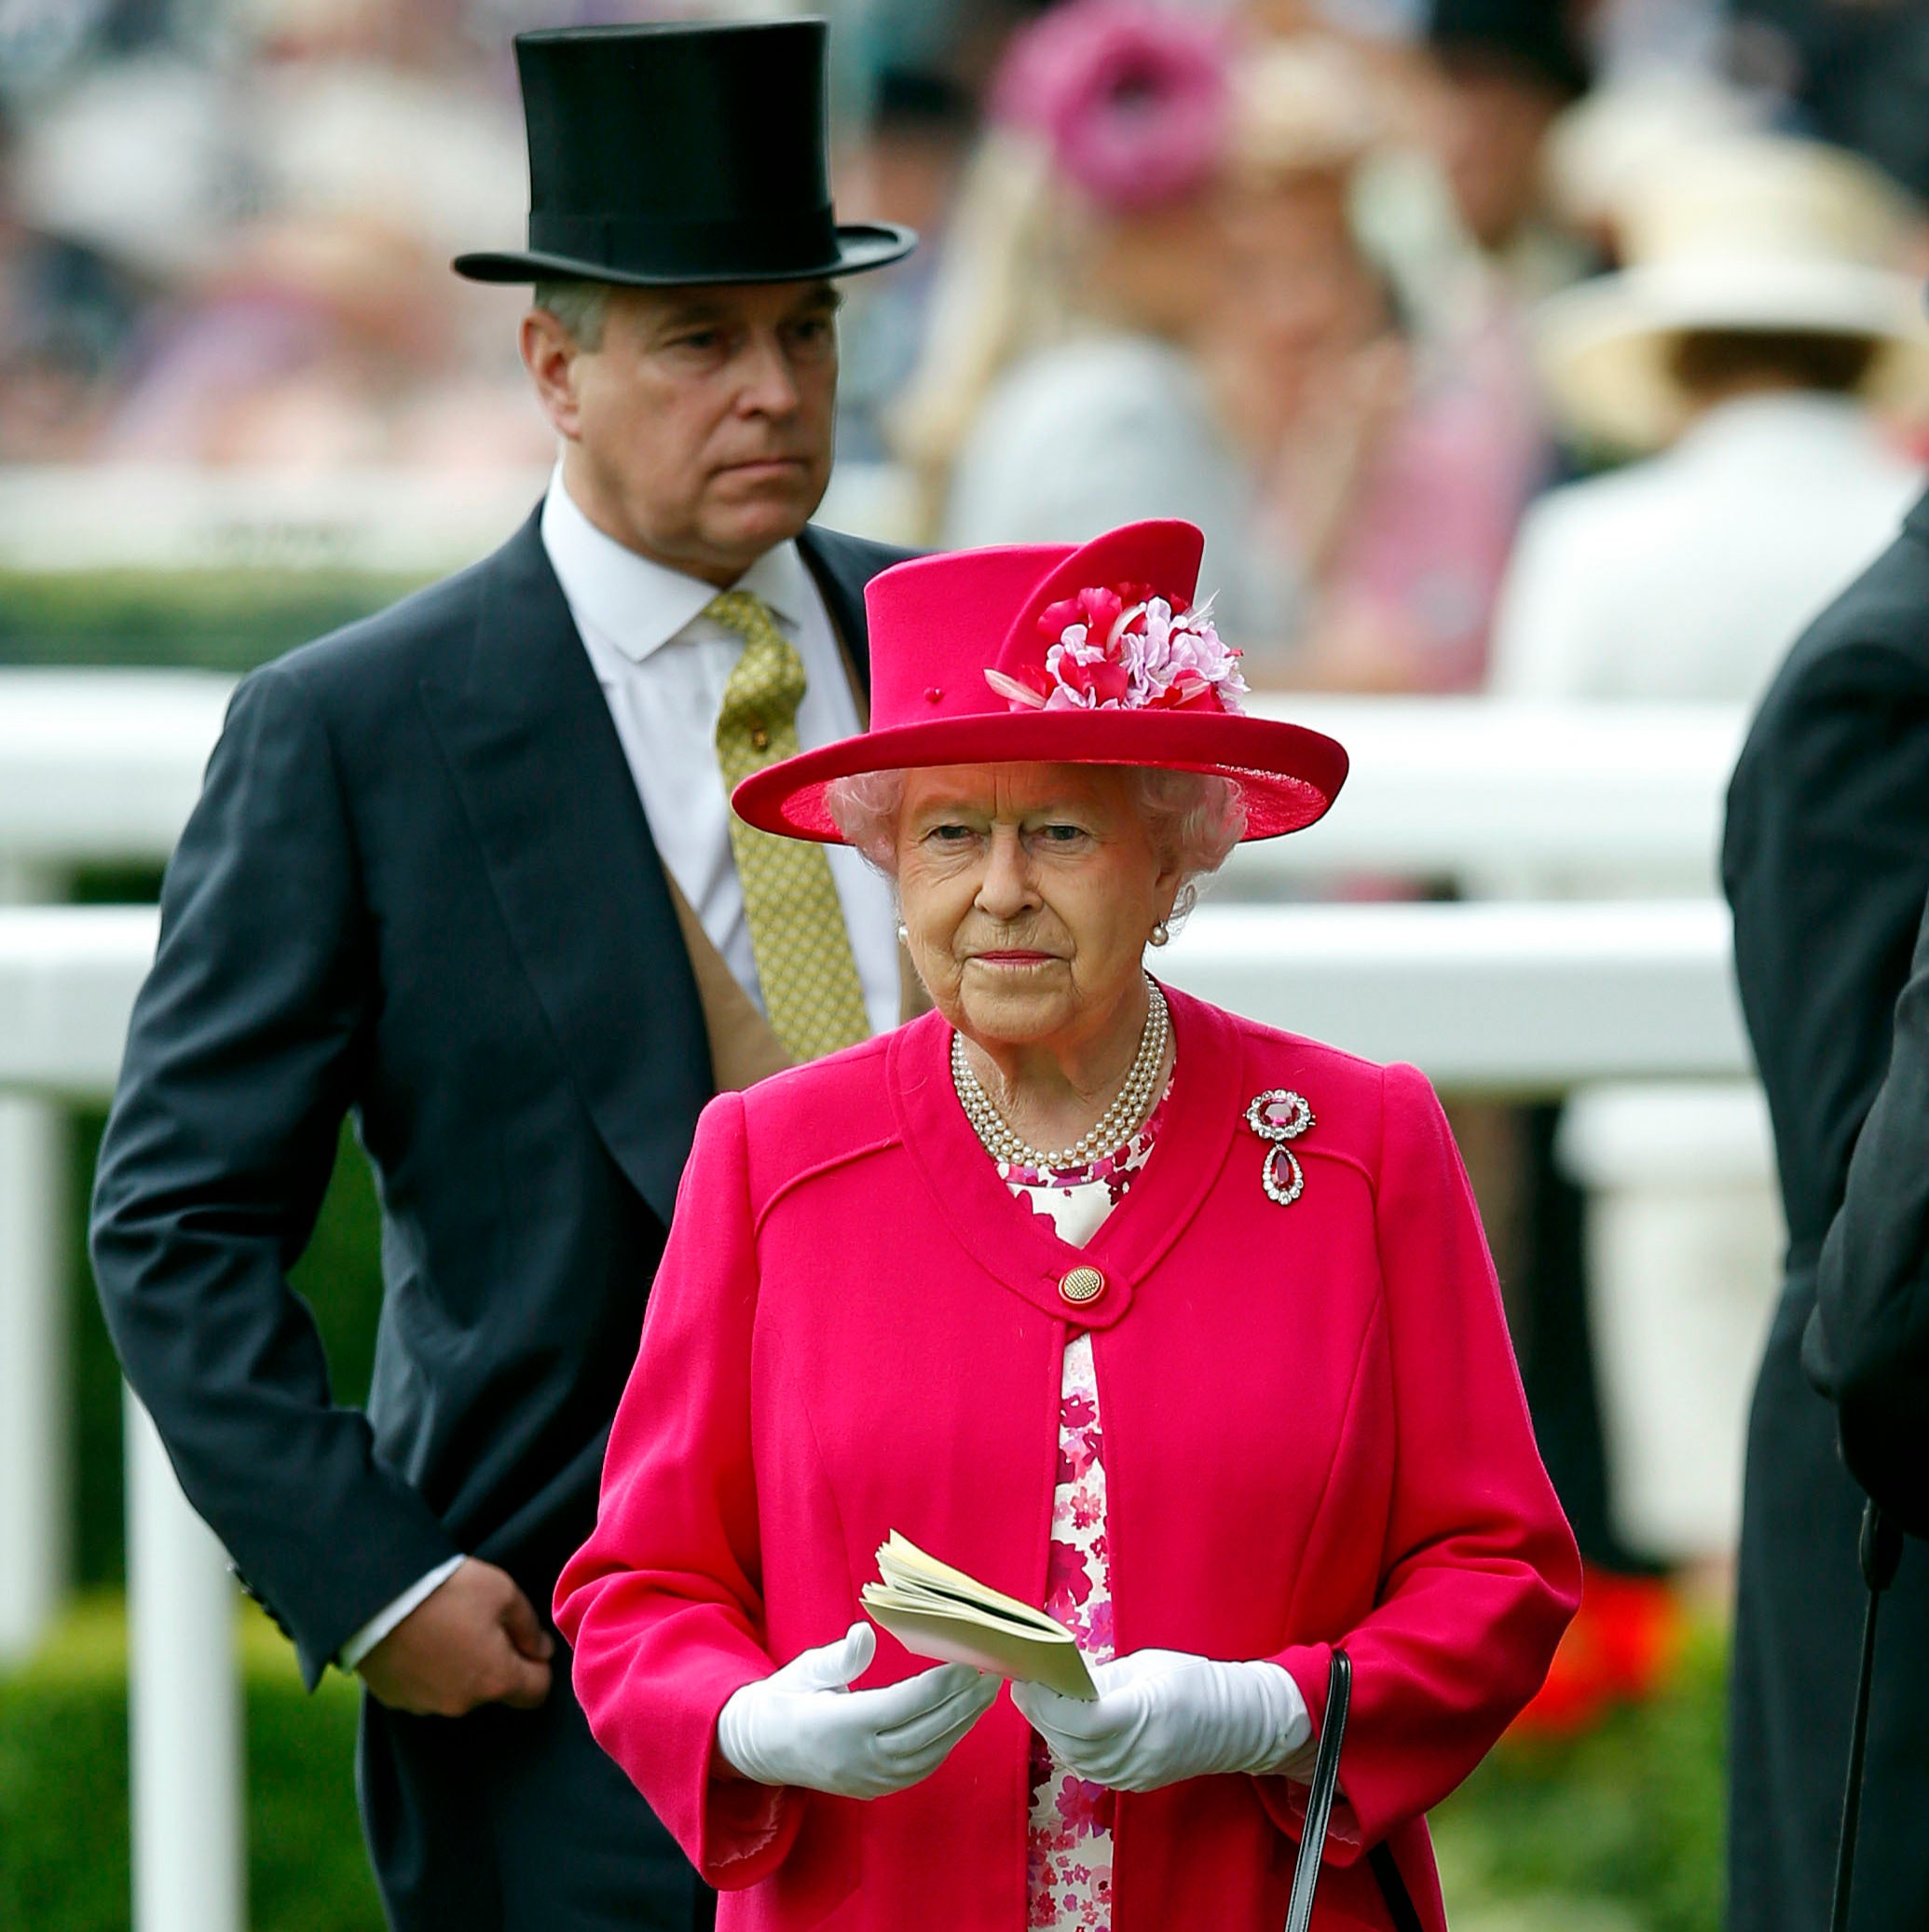 La reina Isabel II fotografiada con su segundo hijo, el príncipe Andrew, en la carrera de caballos de Royal Ascot en 2015